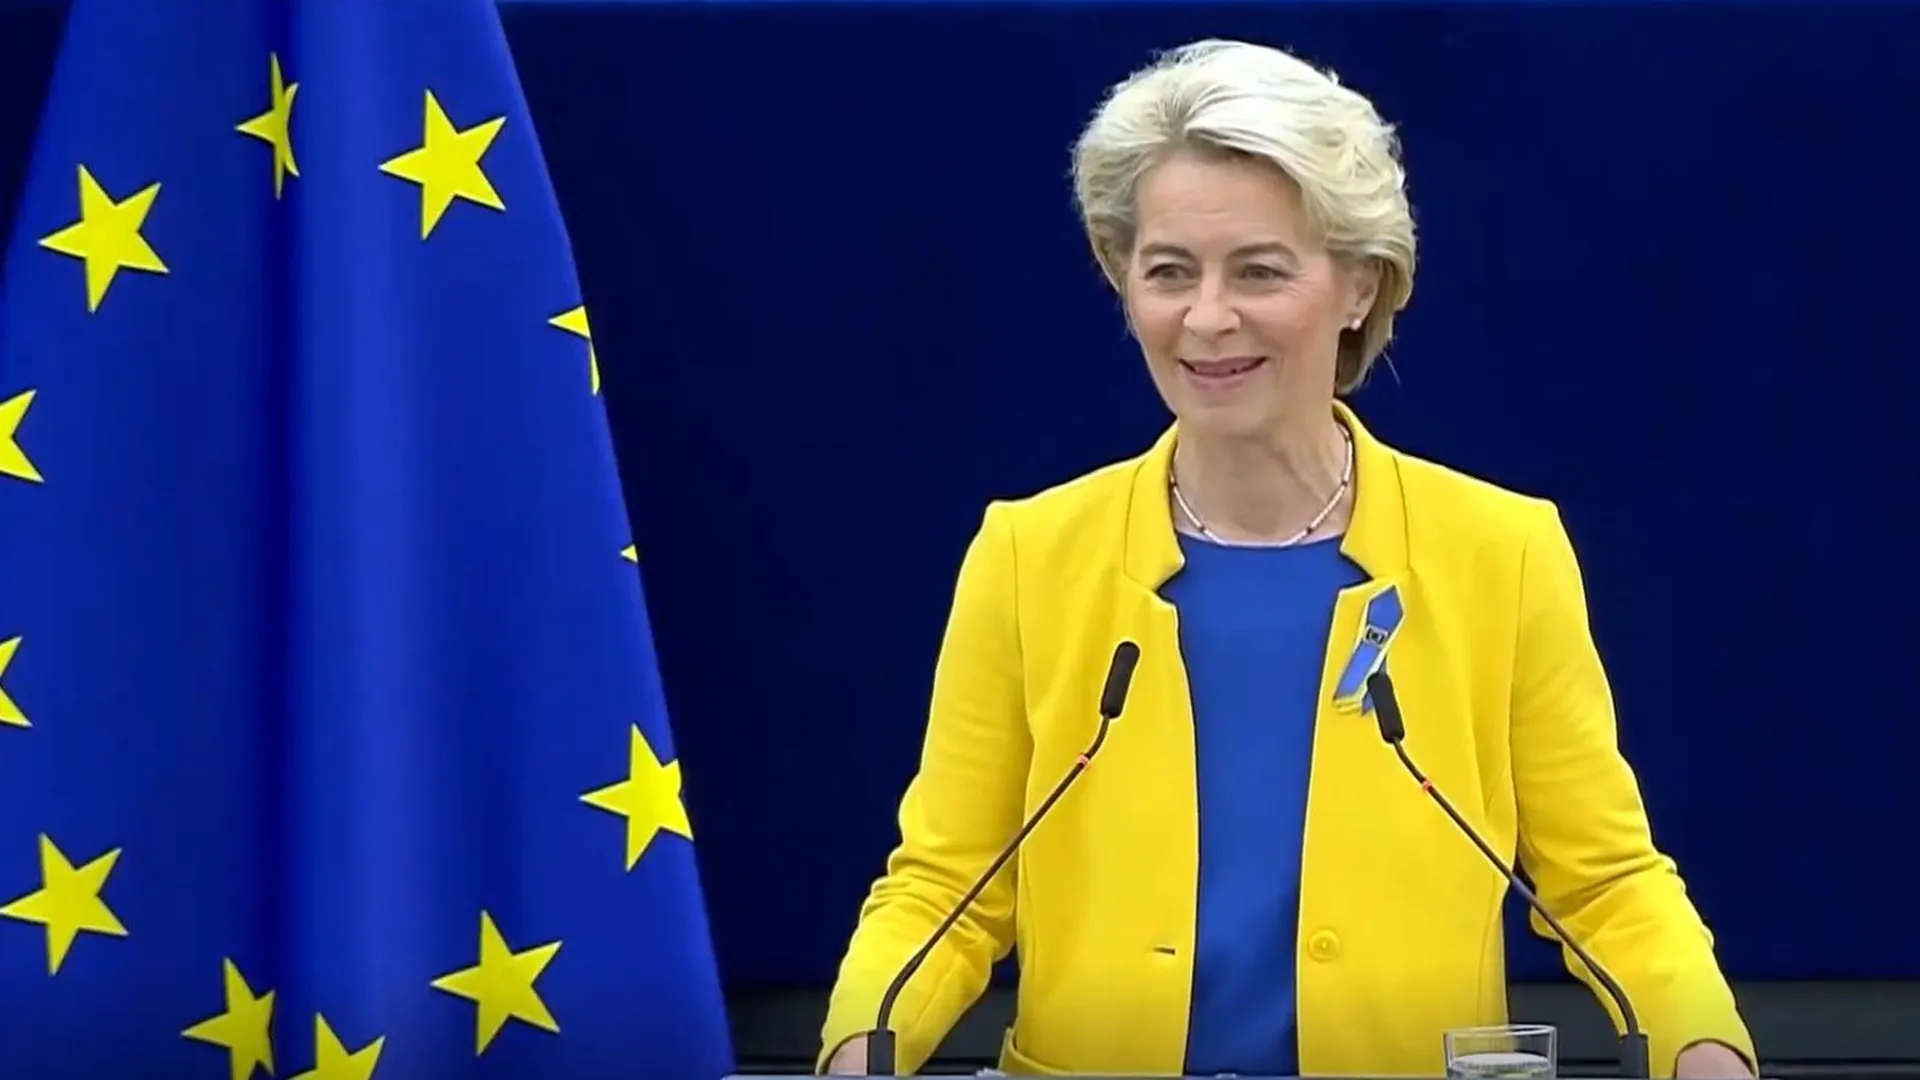 Урсула фон дер Ляйен выступает перед Европарламентом. Фото: youtube.com